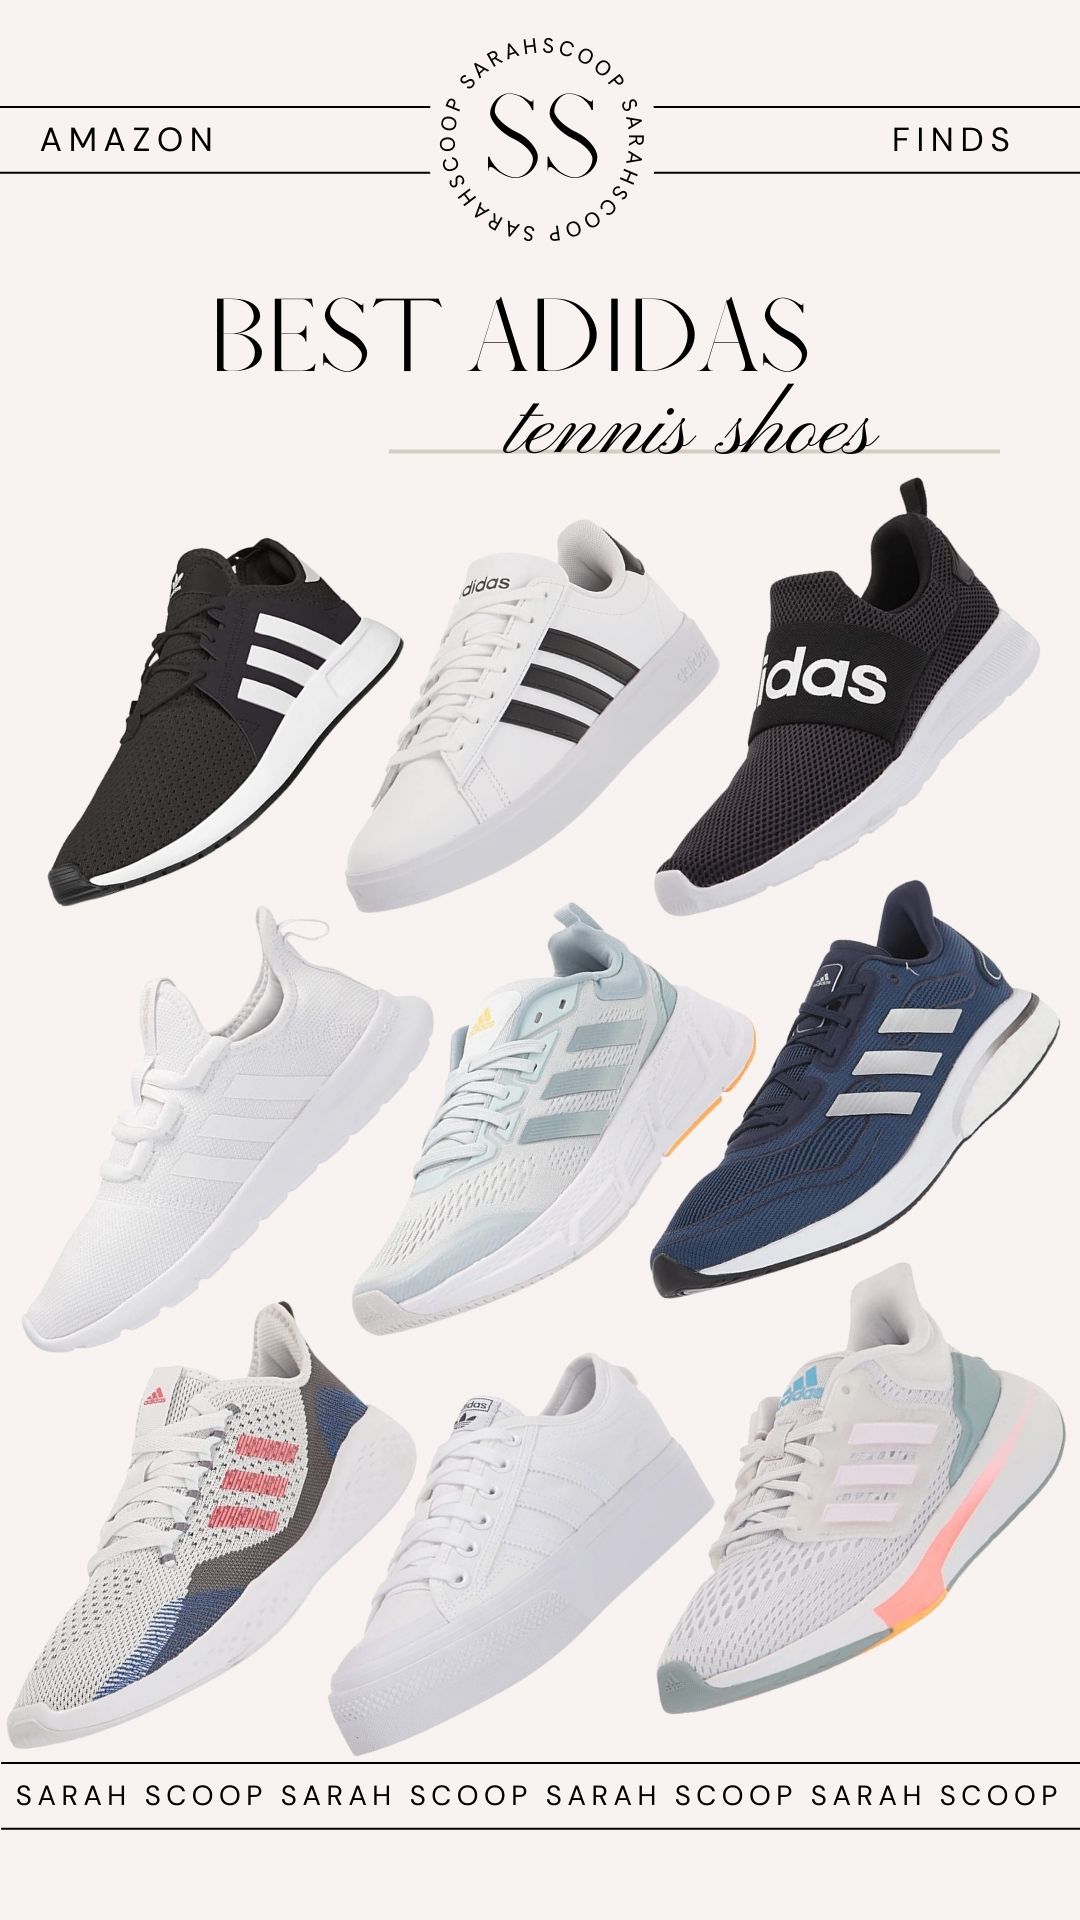 Overvloedig Badkamer Bemiddelen 25 Top Adidas Best Selling Shoes and Sneakers | Sarah Scoop